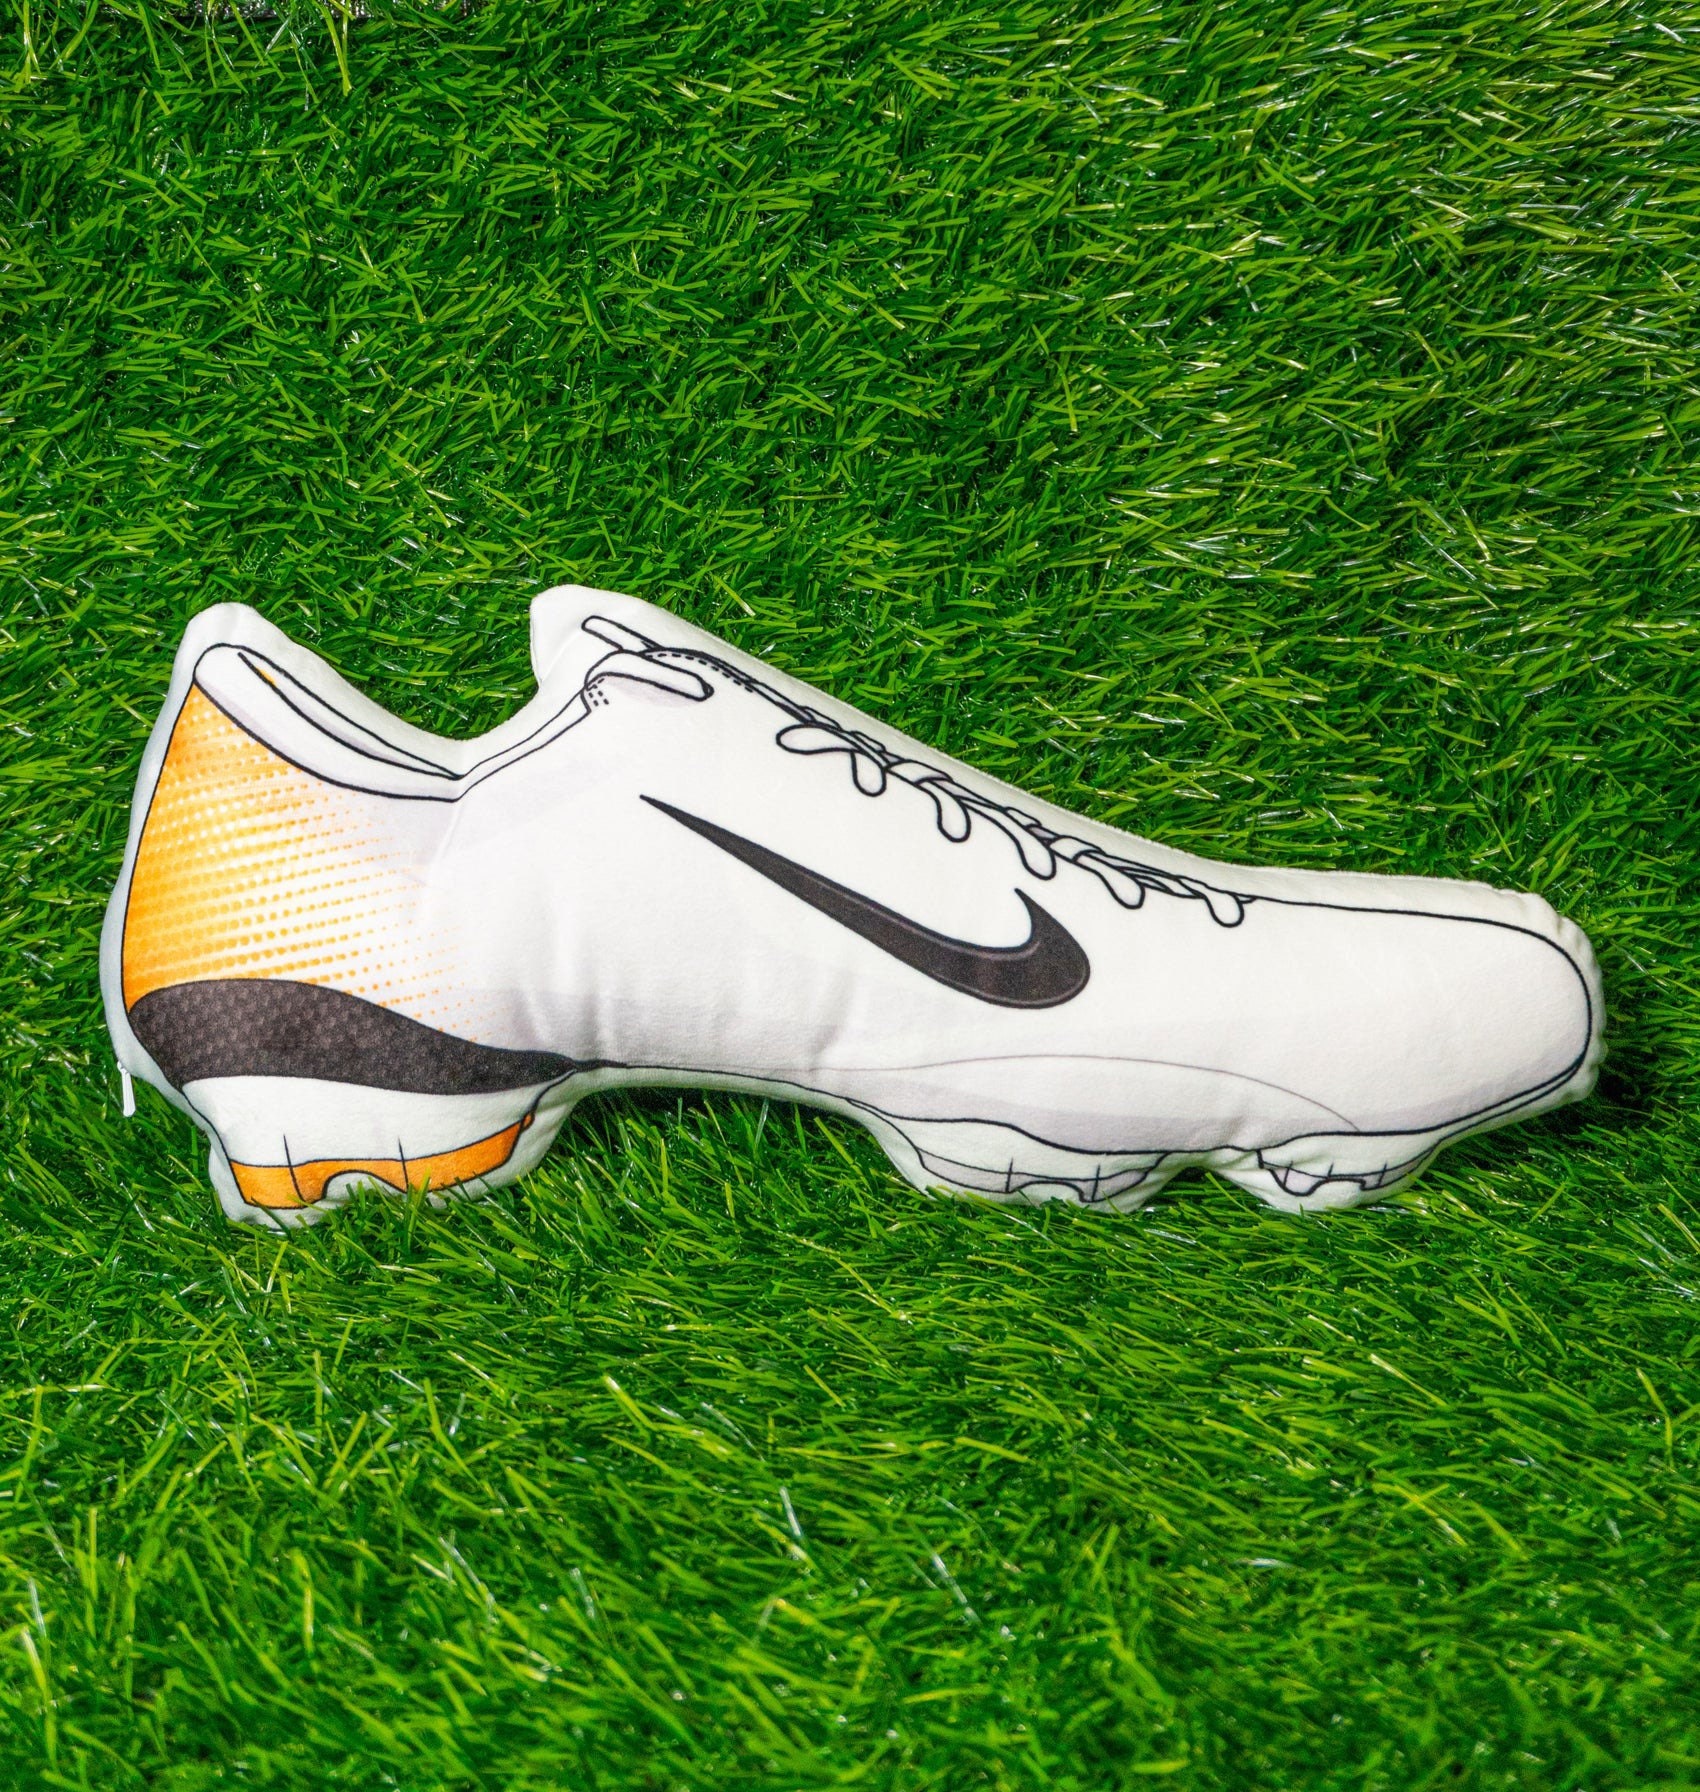 Nike Mercurial Vapour III Gold & White 2006 Football Boot Etsy Denmark